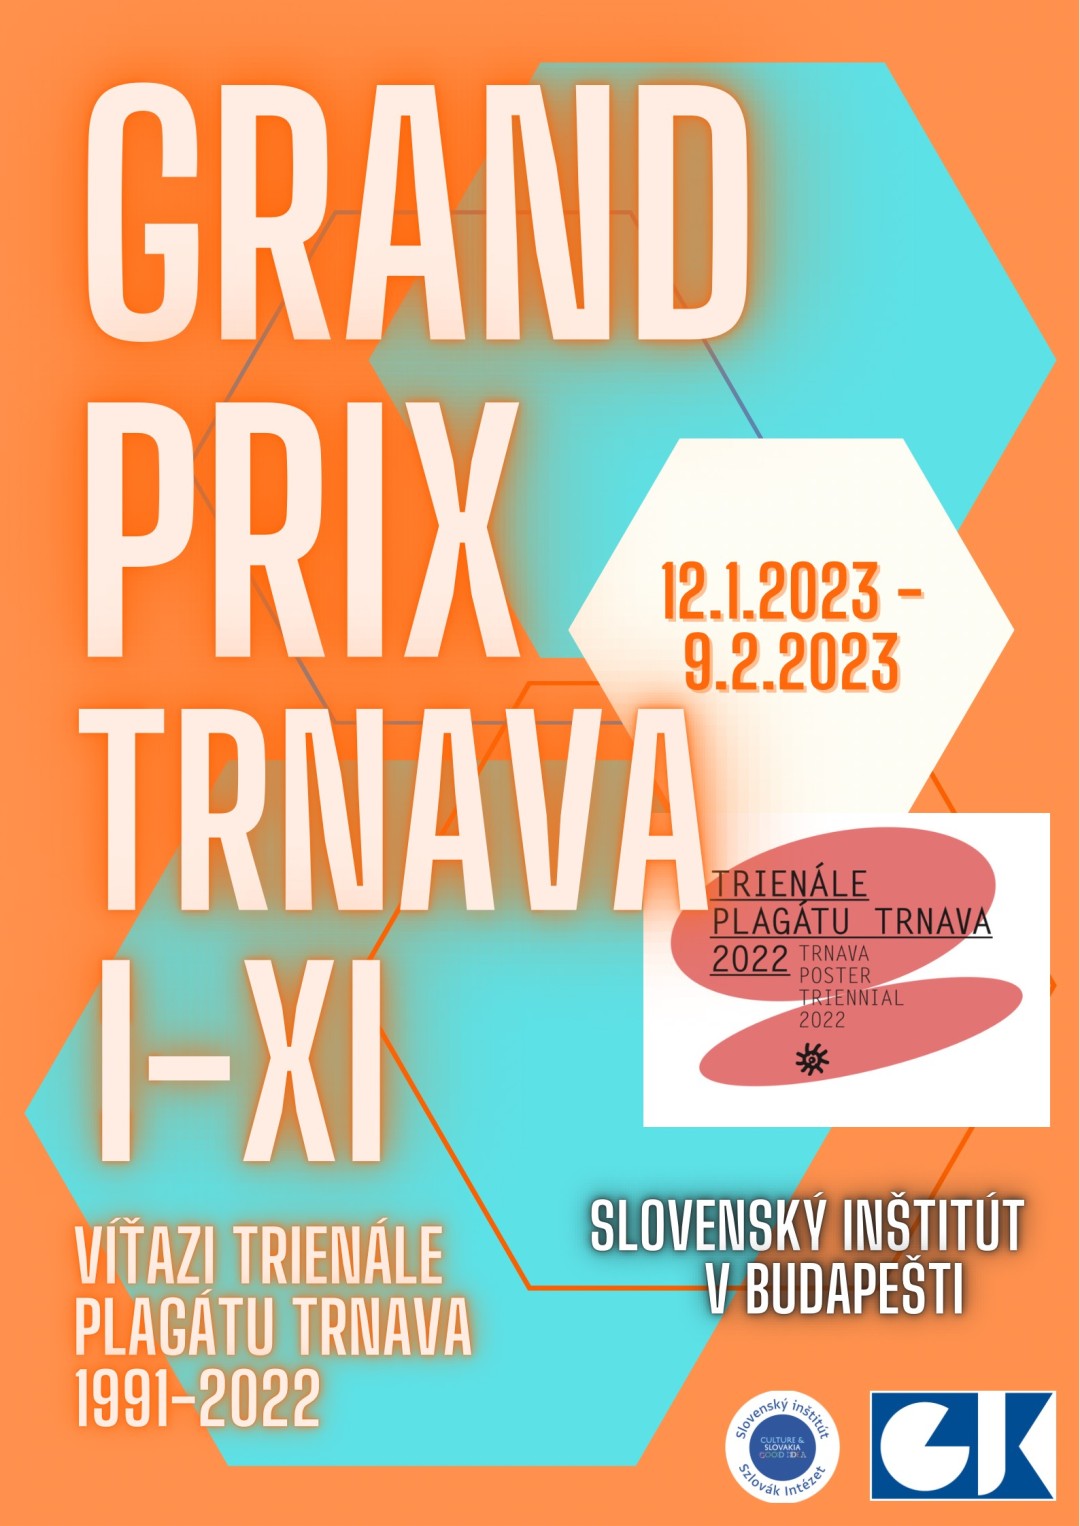 GRAND PRIX TRNAVA I-IX Víťazi trienále plagátu Trnava 1991-2022